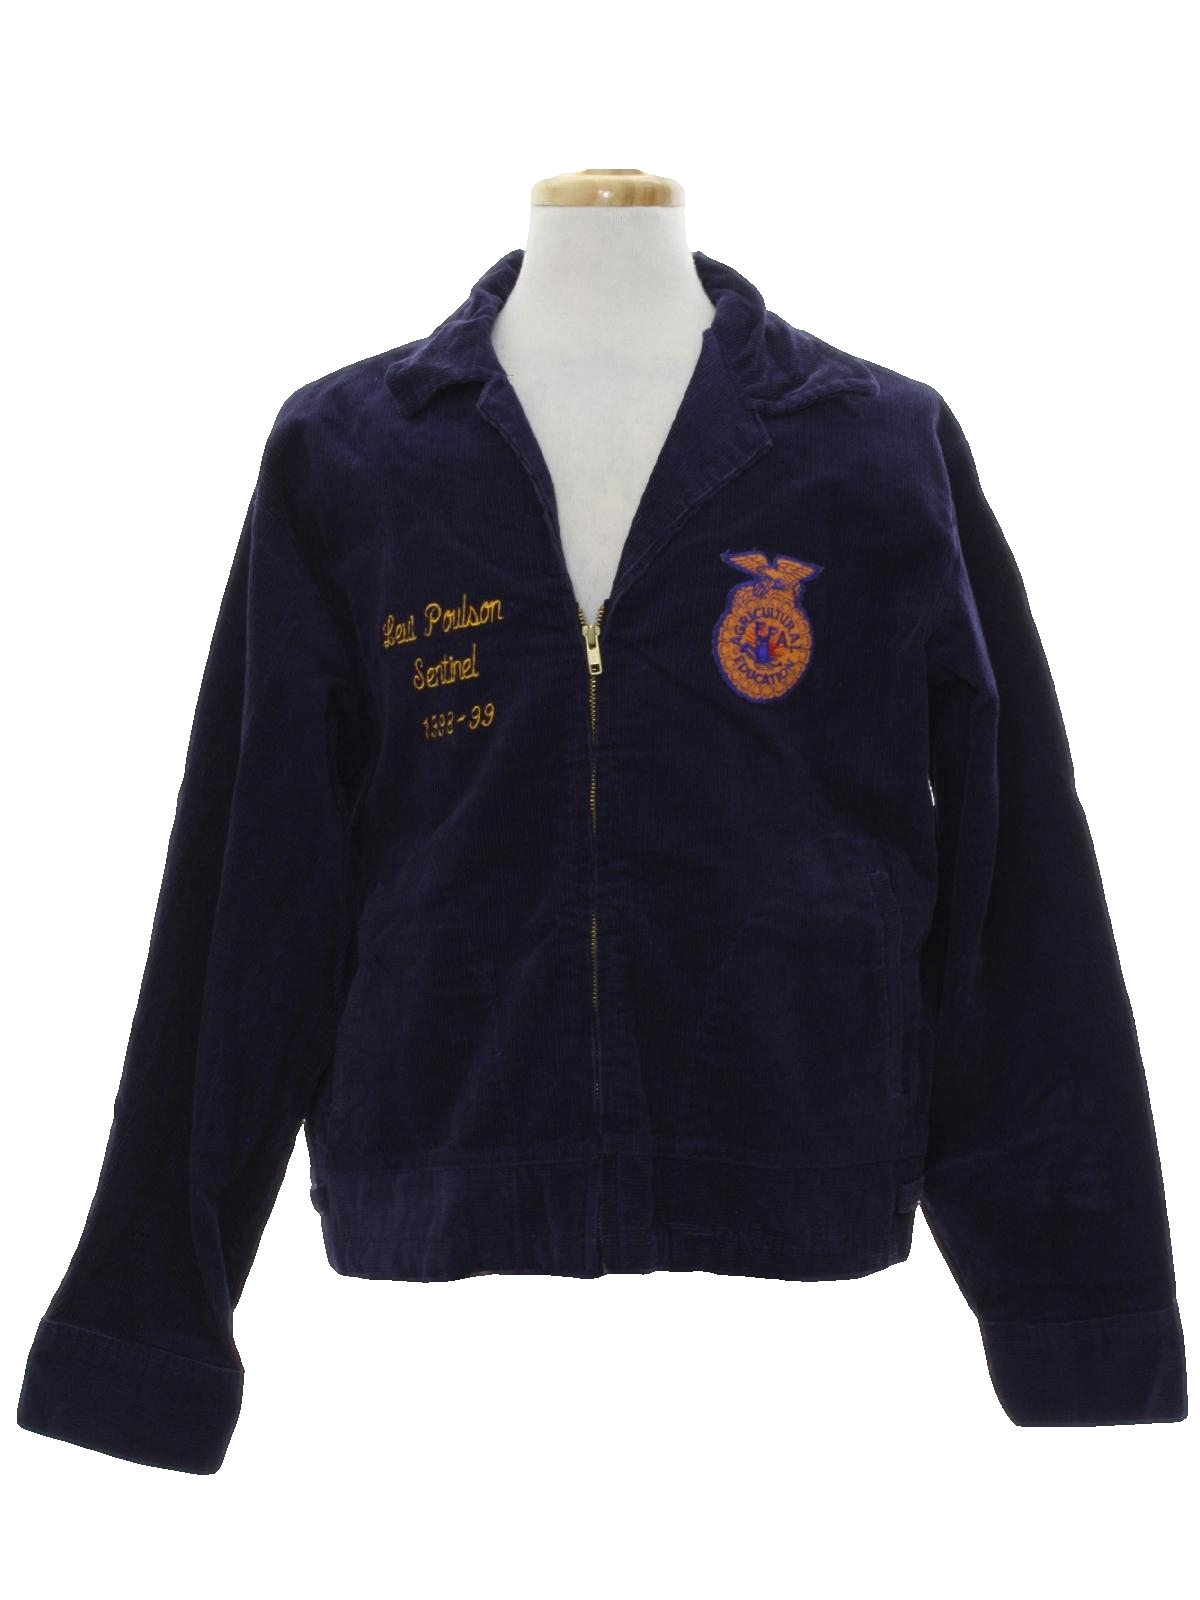 FFA corduroy jacket 90's vintage柄デザイン刺繍